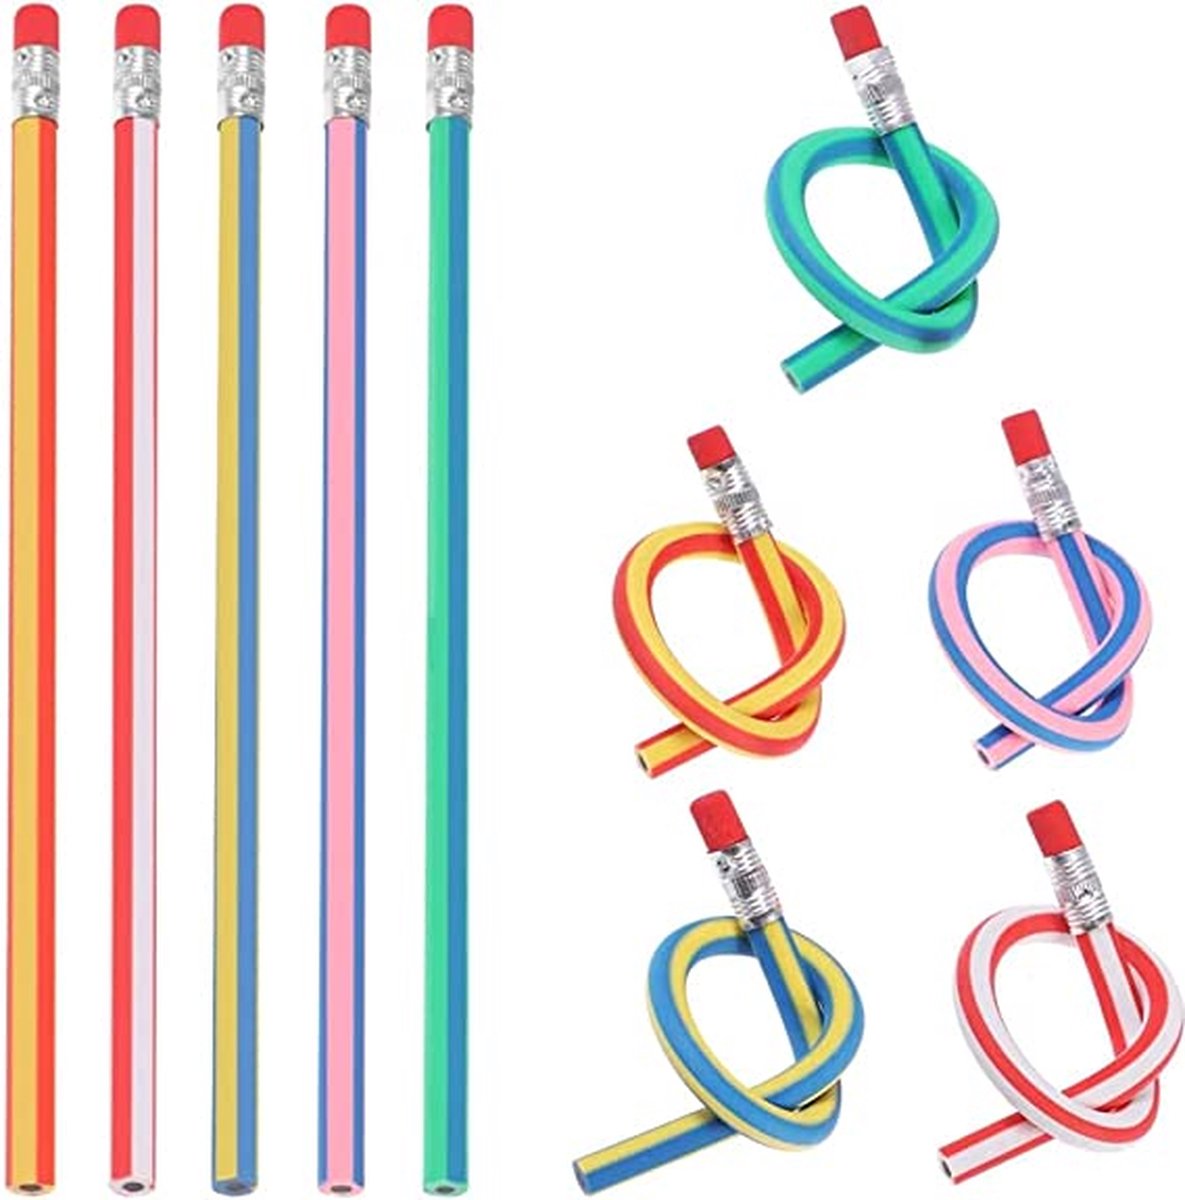 flexibele Bendy potloden, magische Bend potloden voor kinderen, flexible bendy pencils 48